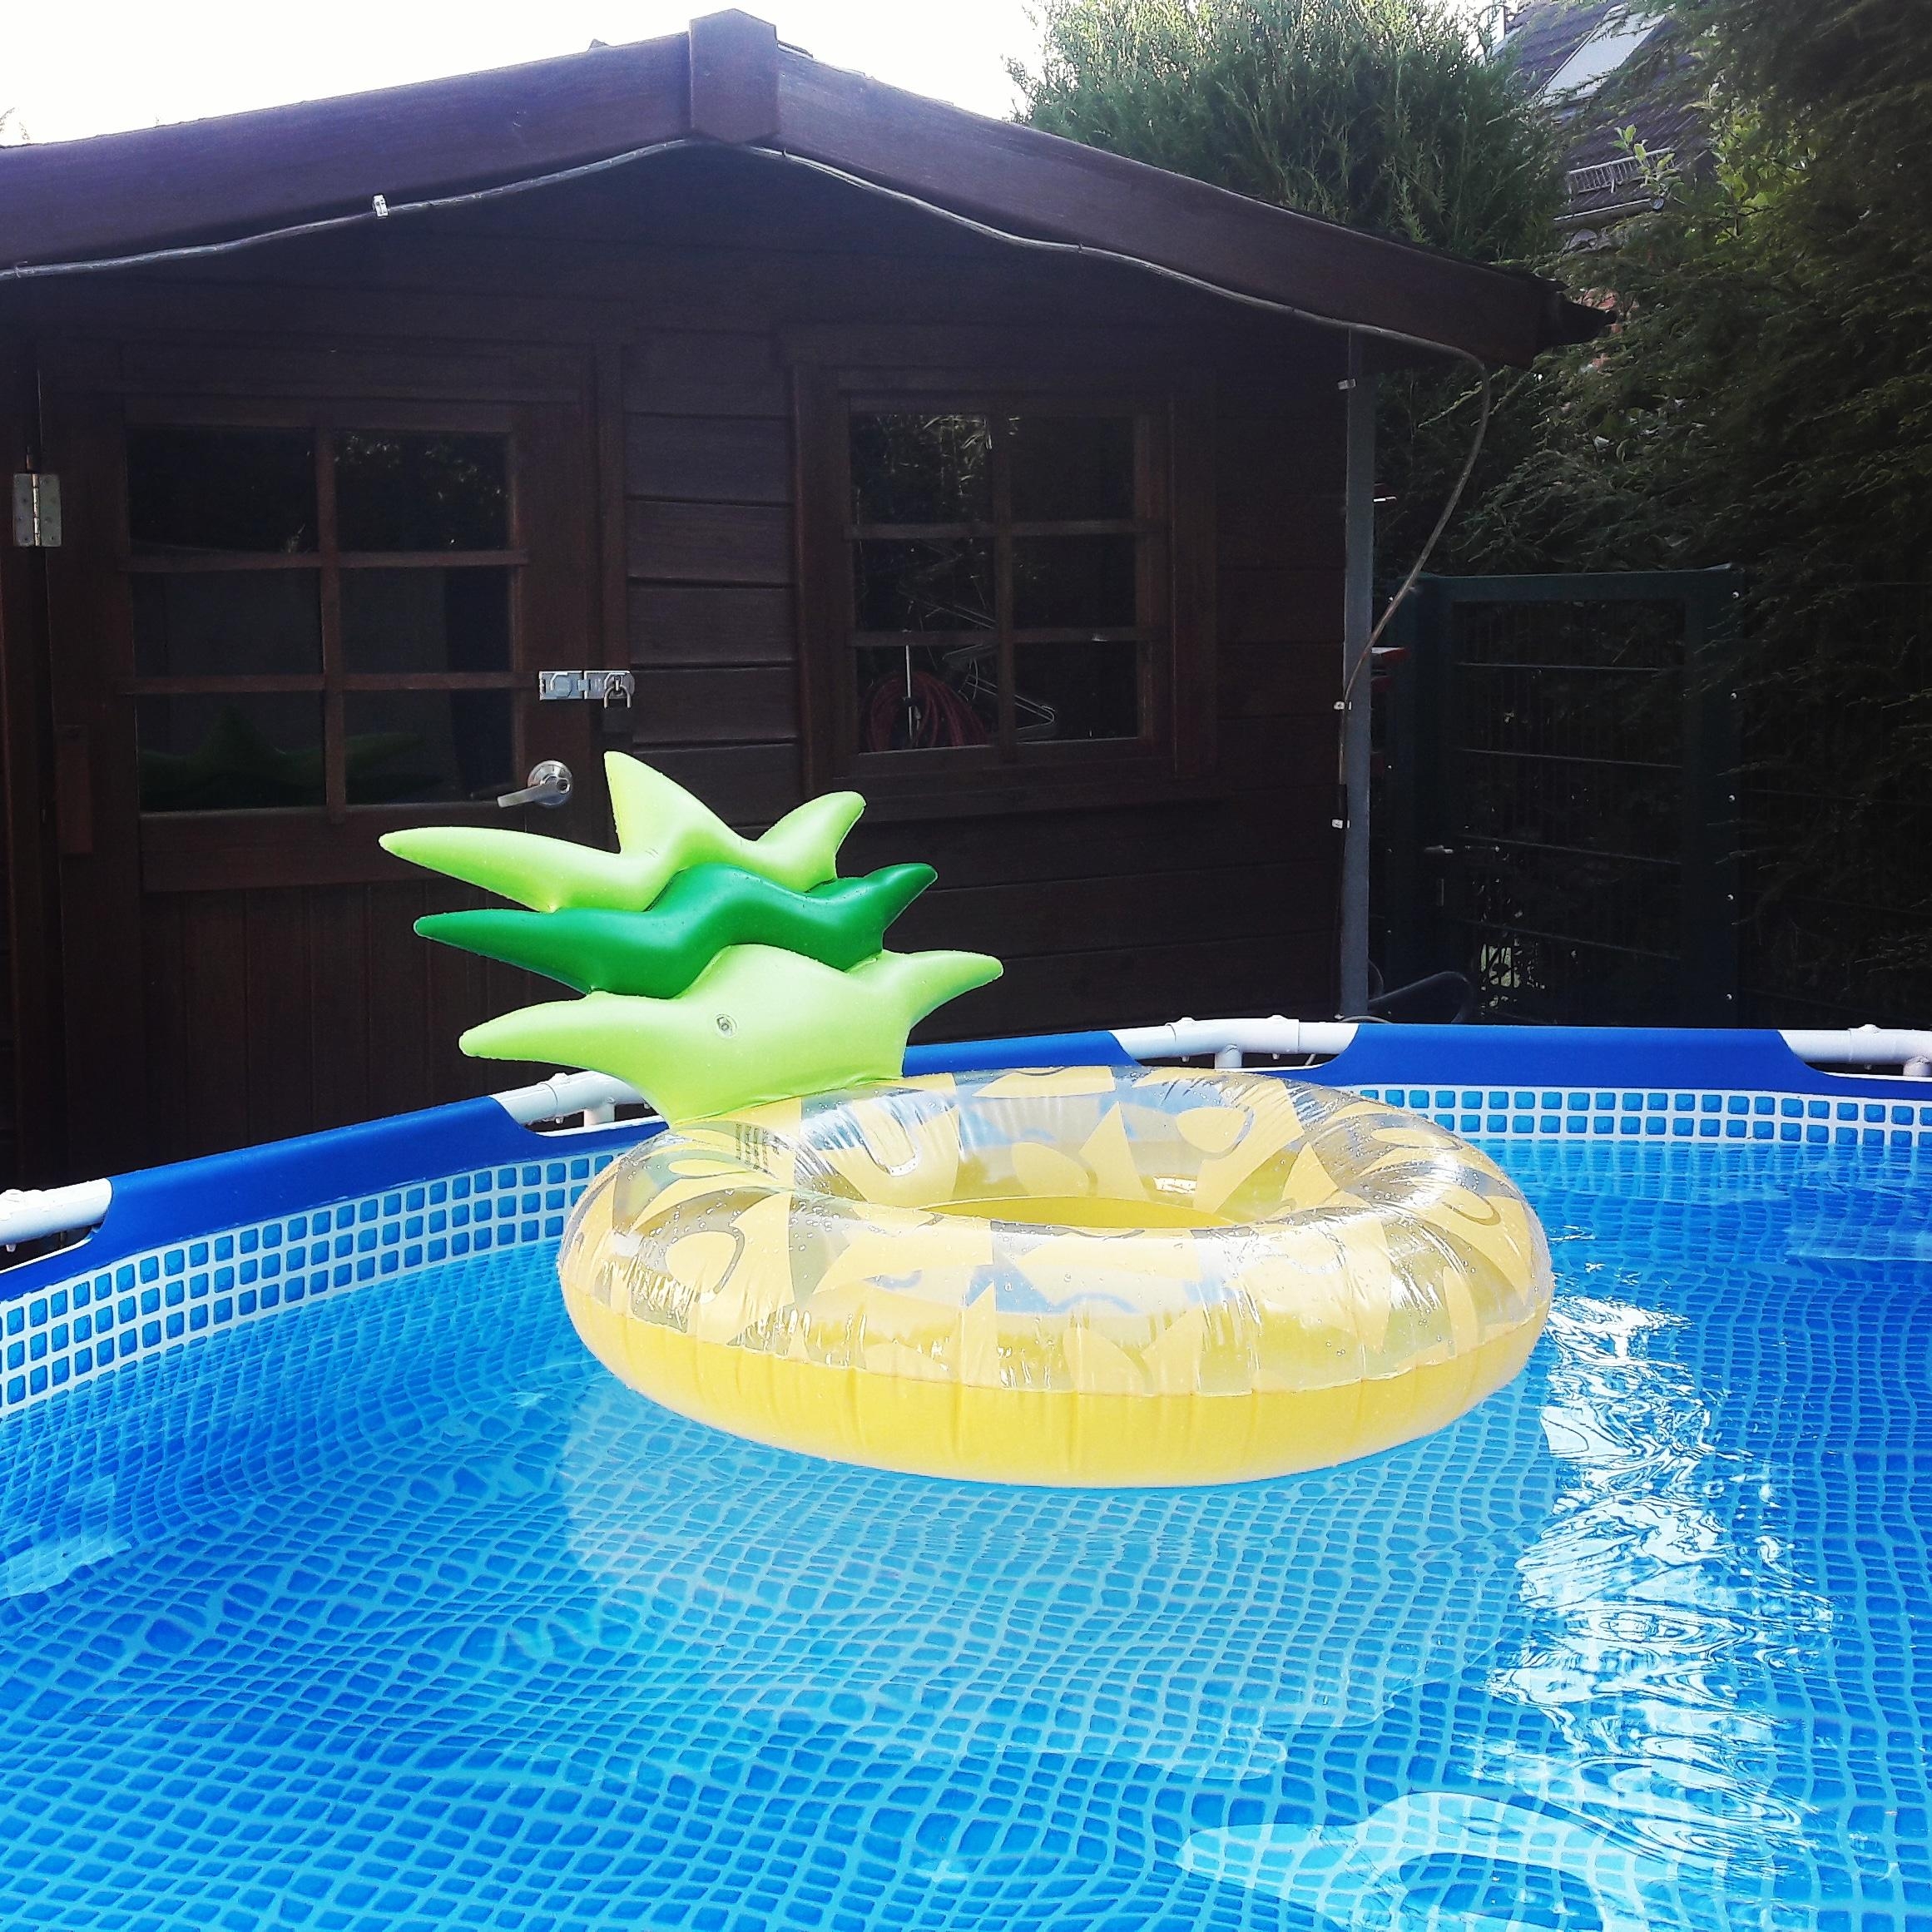 Meine Idee von #bunt #Sommer #Pool #Relaxx